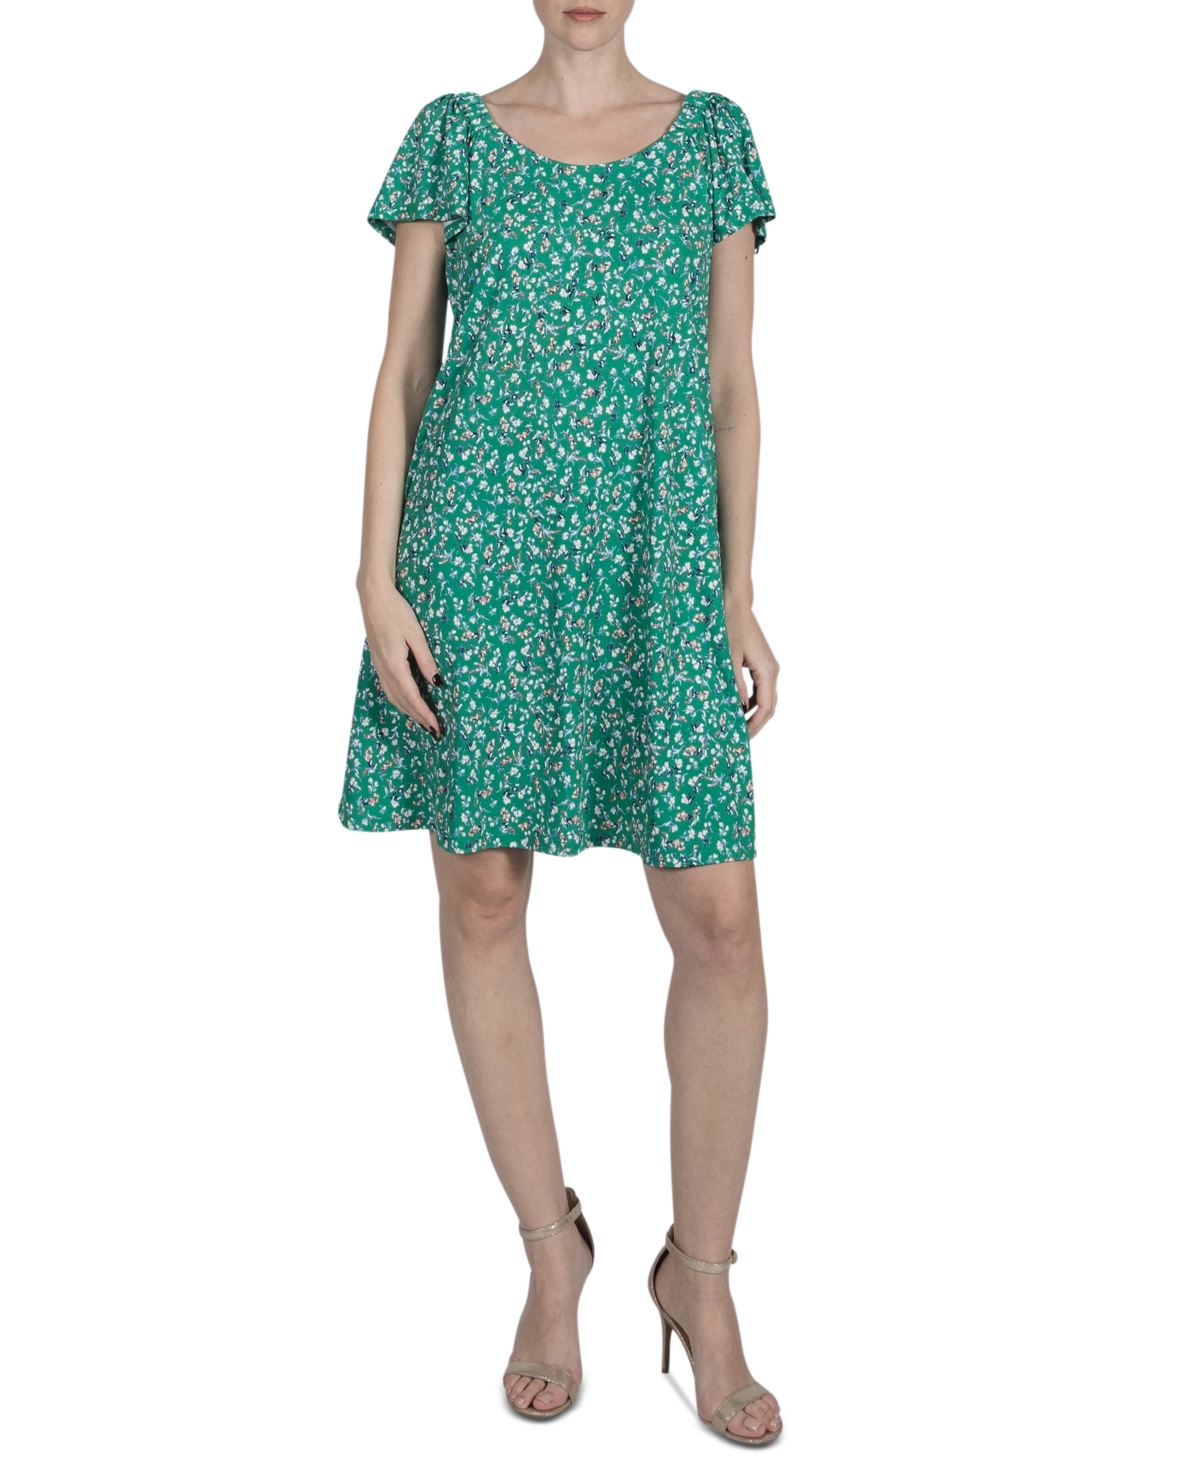 Women's Floral-Print A-Line Dress - Green Mult